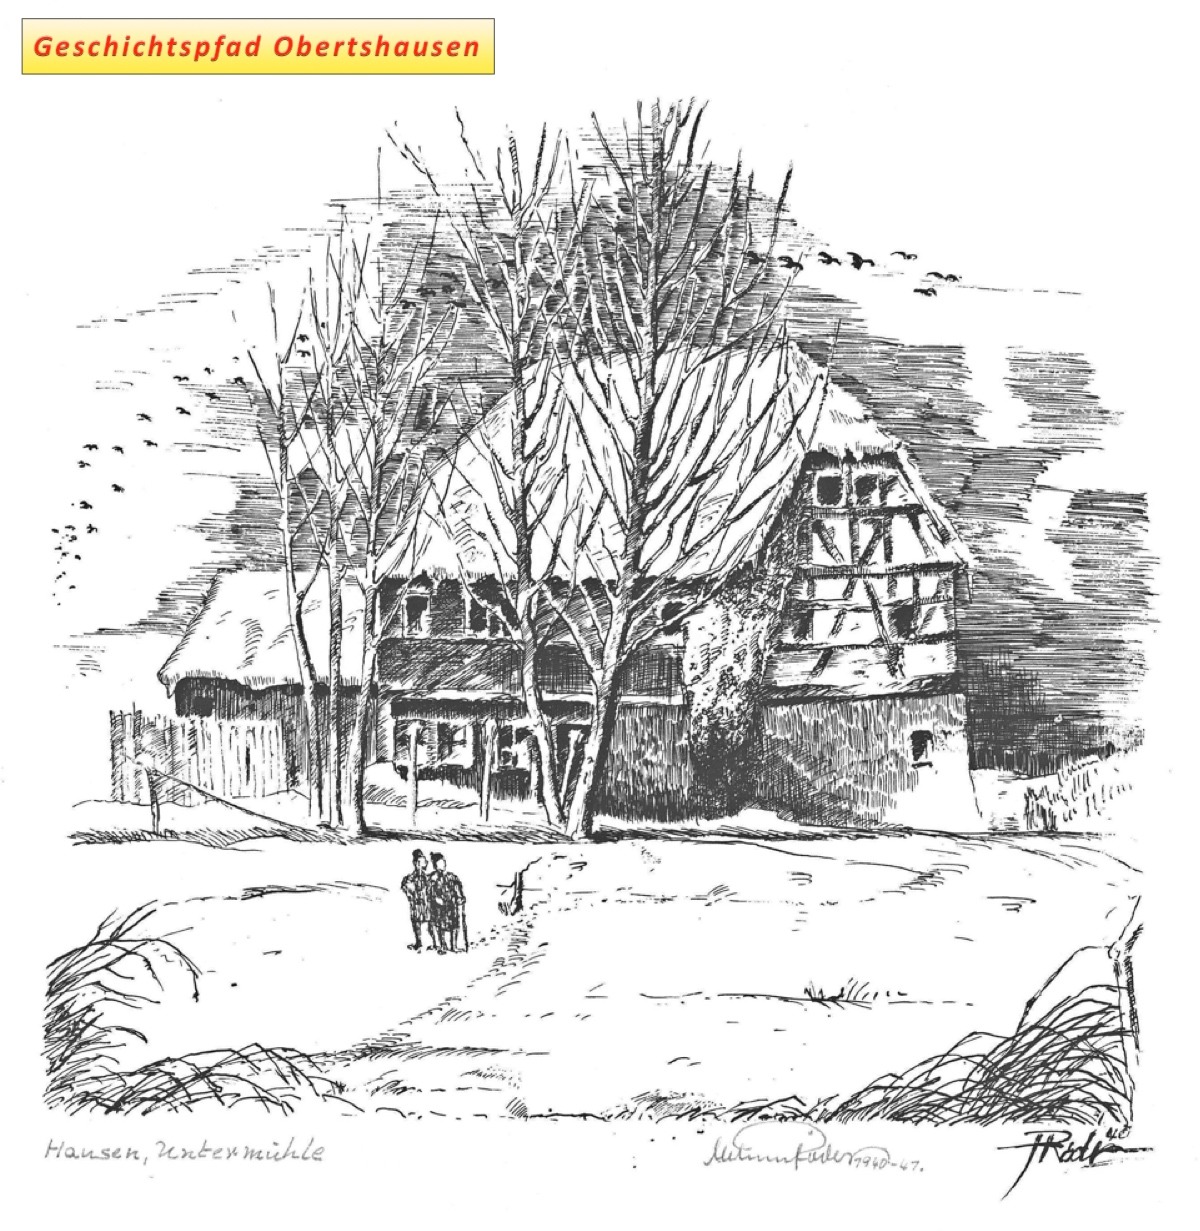 Untermühle Hausen Winter 1940-41, Federzeichnung von Helmut Röder